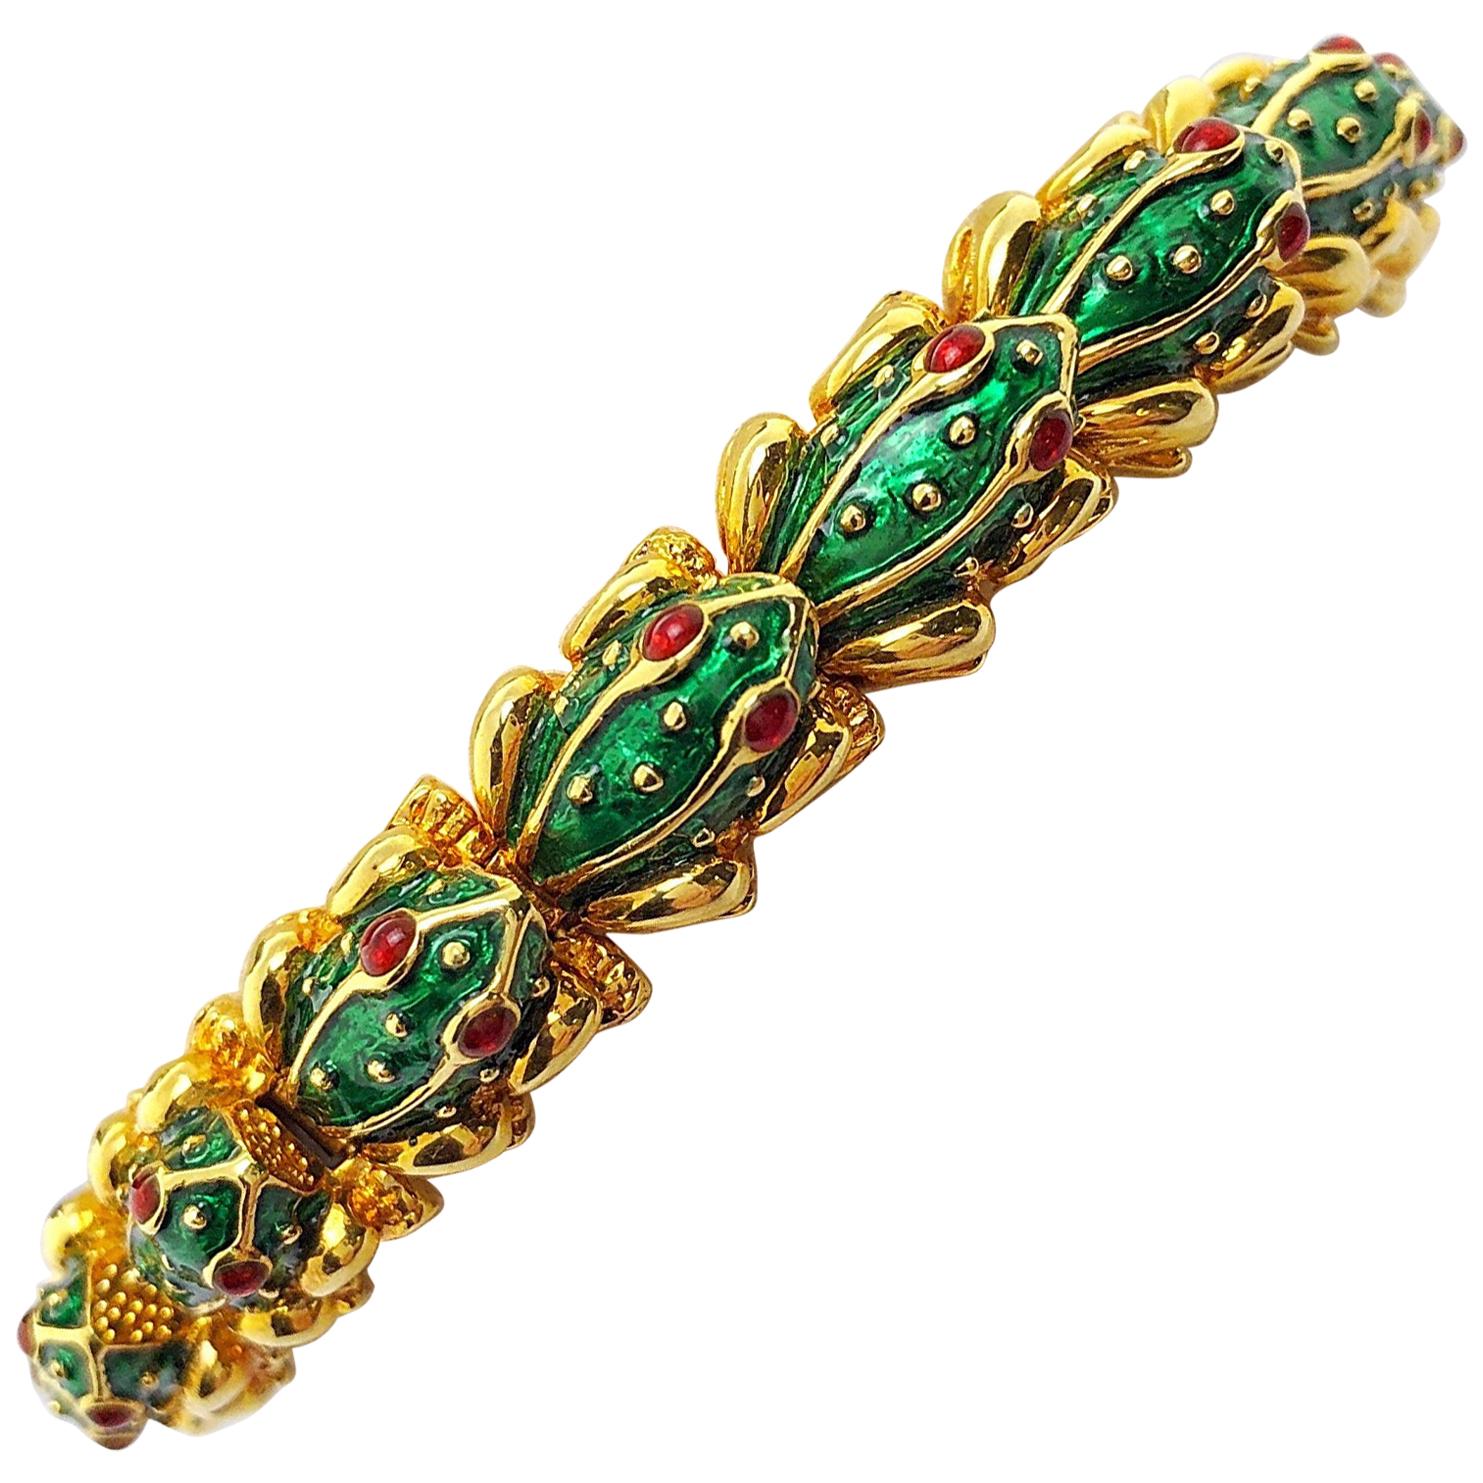 Hidalgo Frosch-Armband aus 18 Karat Gelbgold, grüner Emaille und Rubin